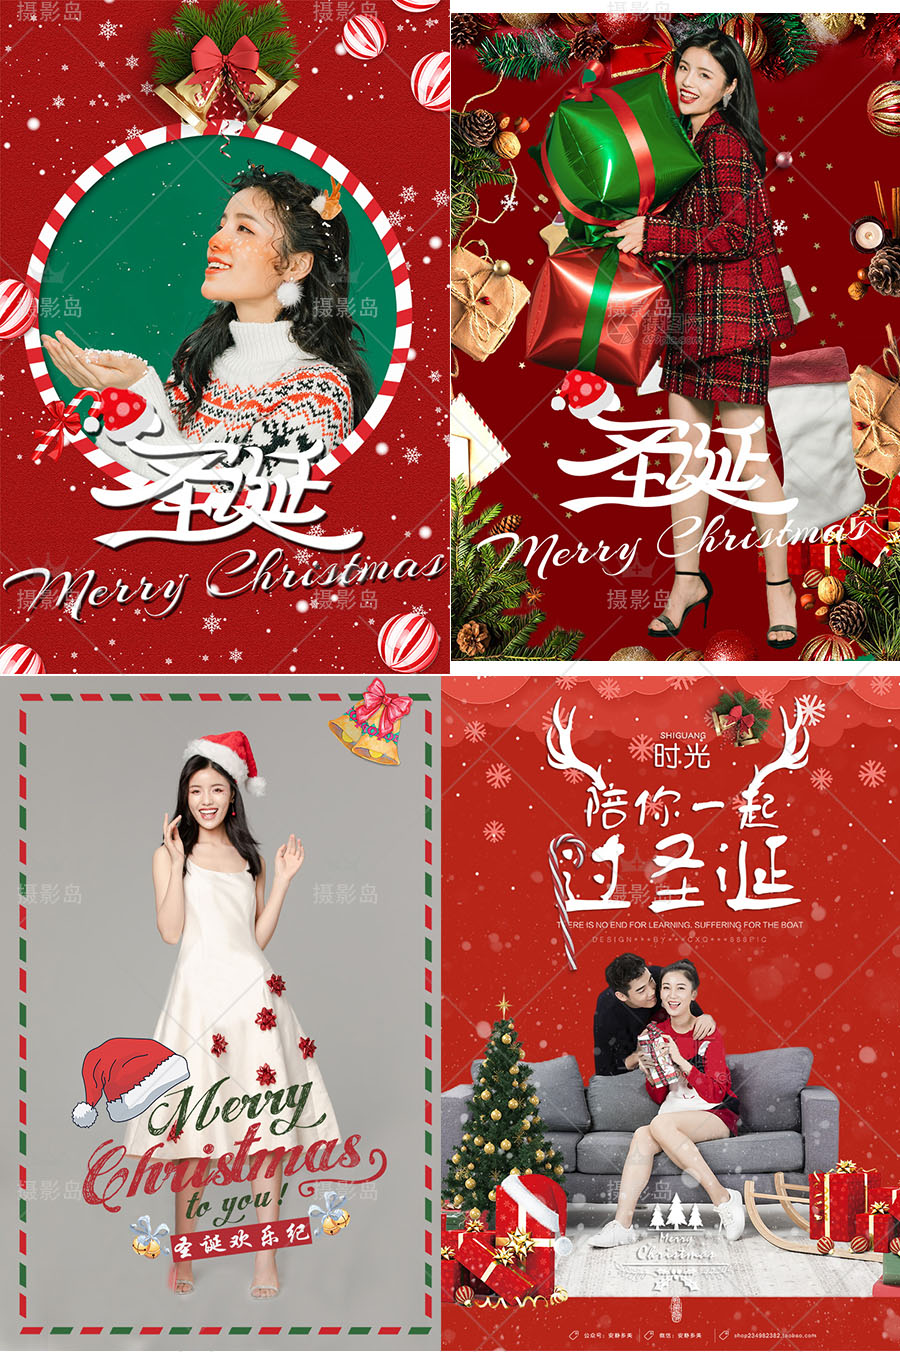 新年圣诞节照片写真样片，圣诞节海报宣传、卡片、贺卡合成背景PSD模板素材